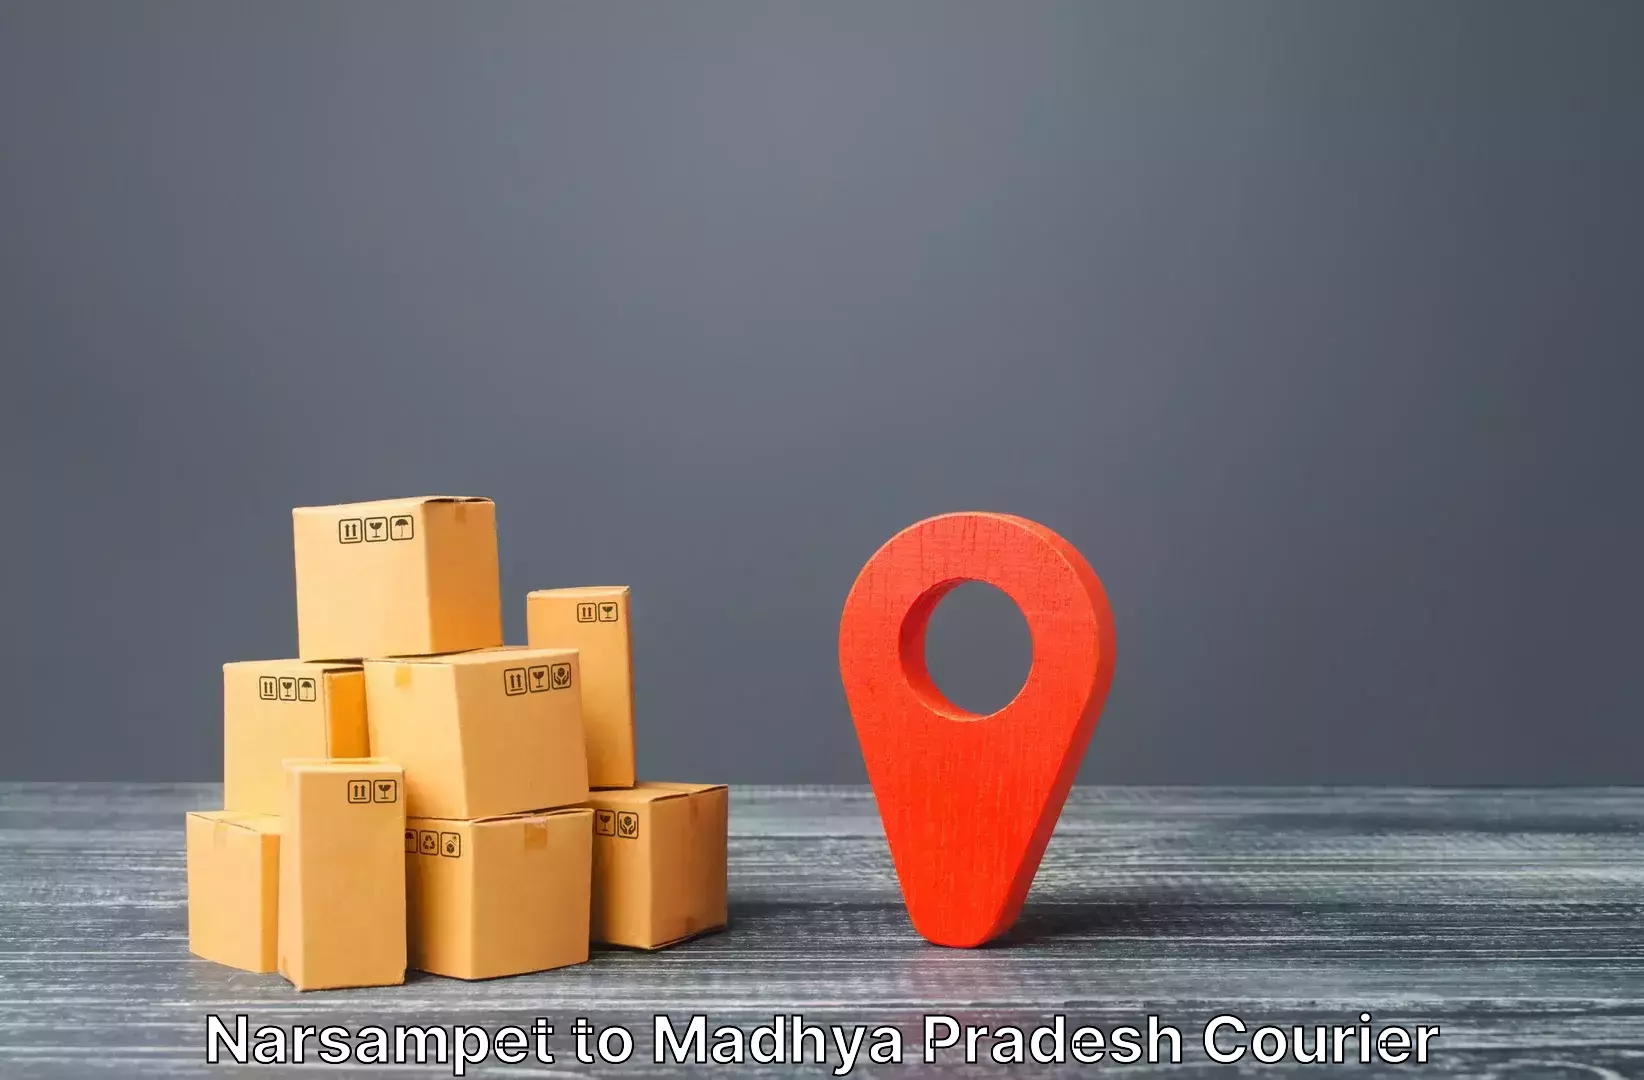 Luggage shipment strategy Narsampet to Nainpur